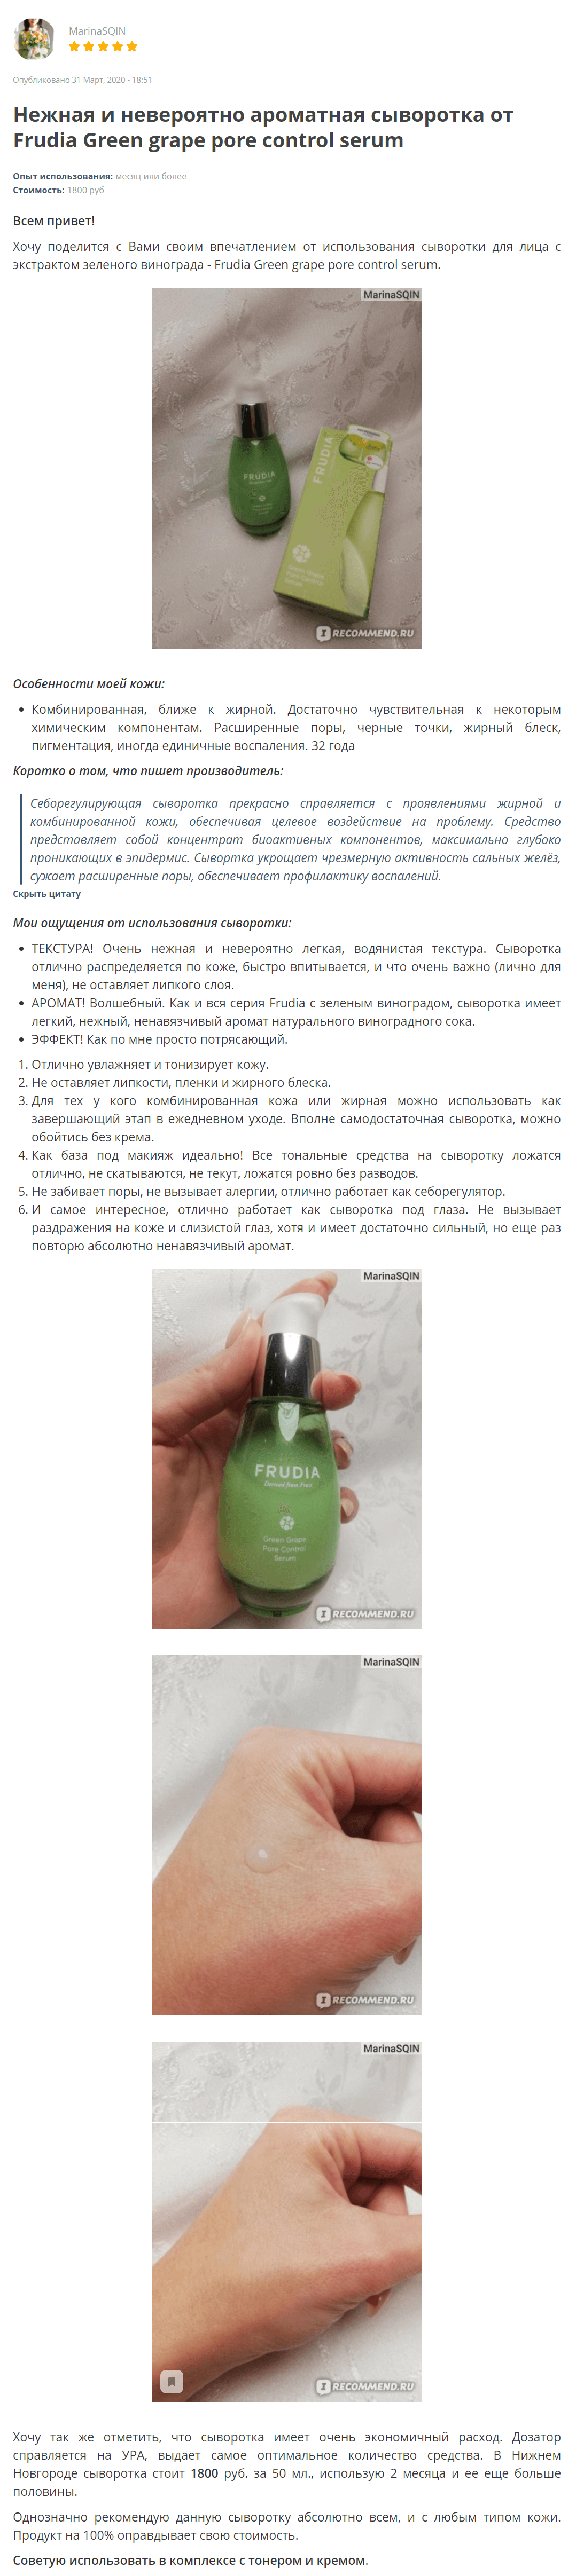 Green Grape Pore Control Serum [Frudia] отзыв 1 (2)